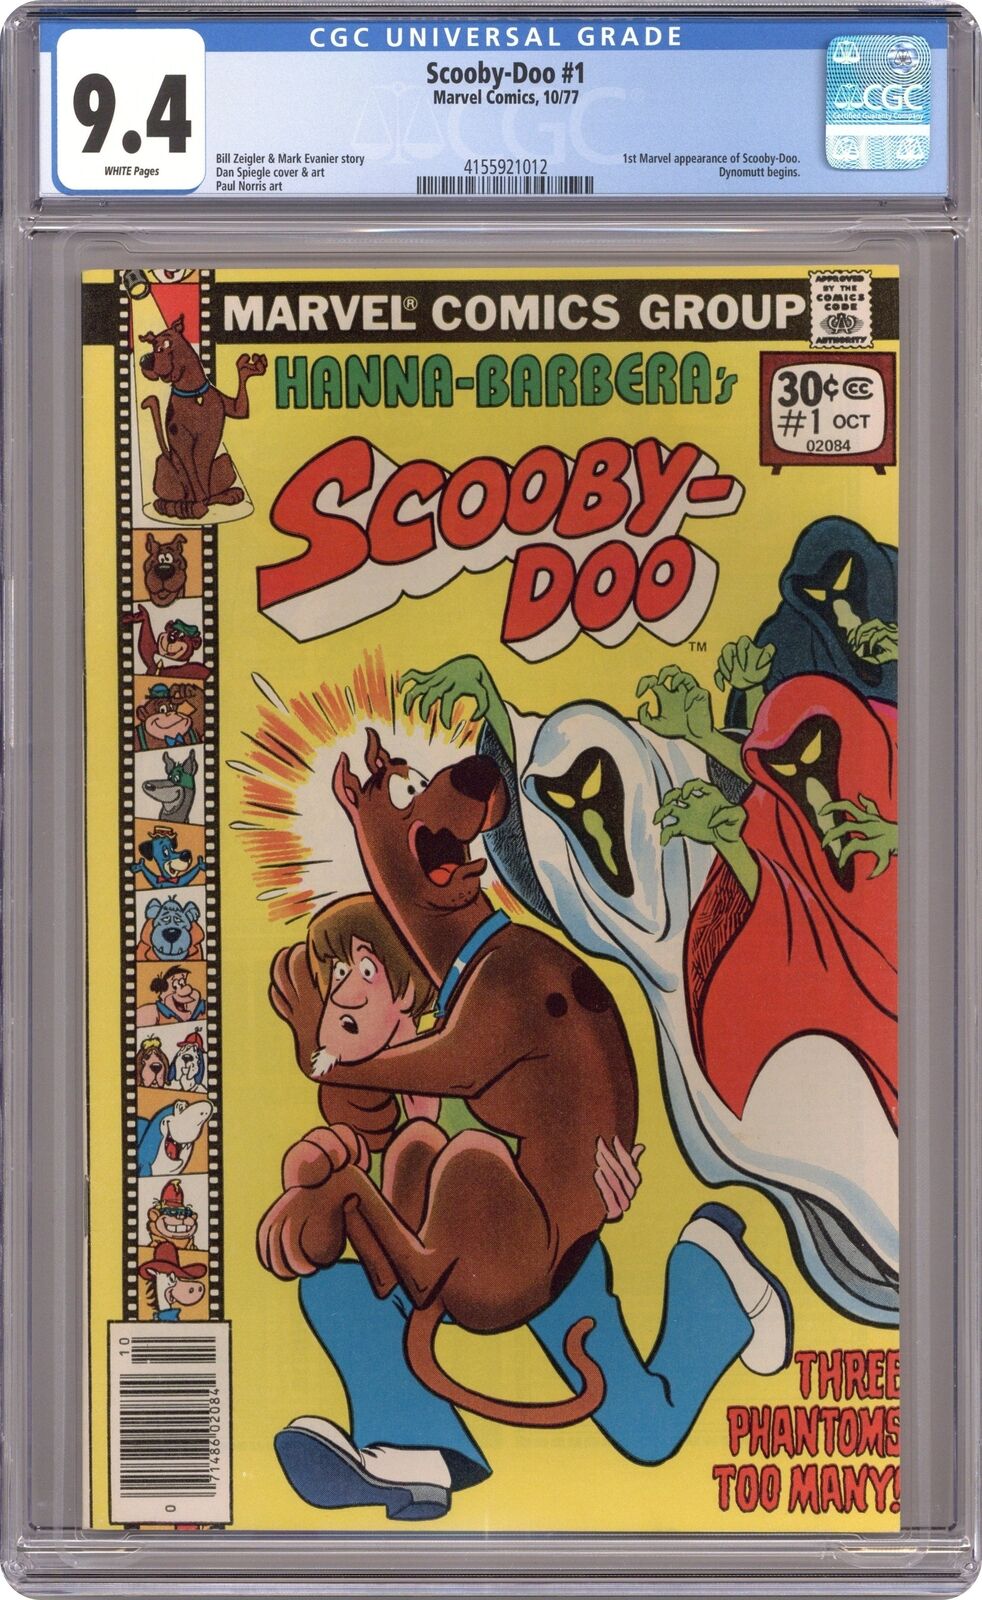 Scooby-Doo #1 CGC 9.4 1977 4155921012